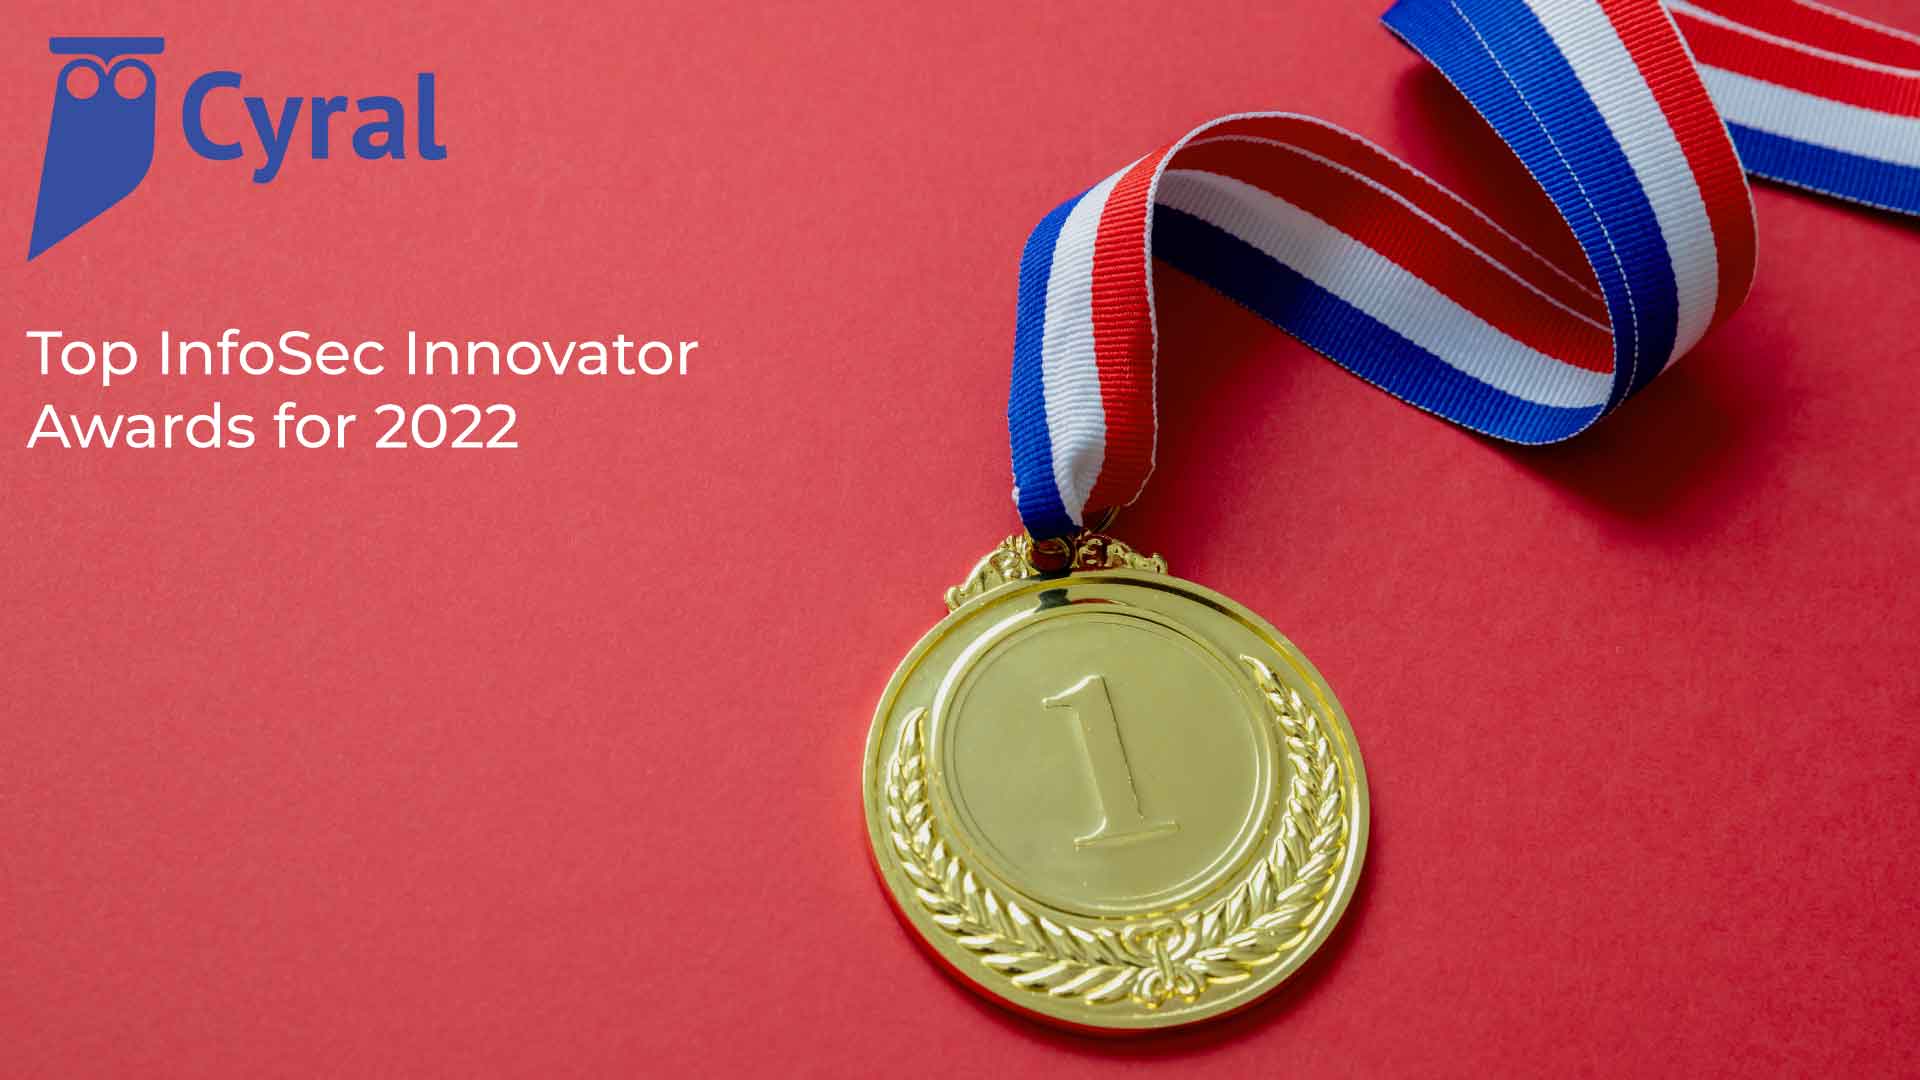 Cyral Named Winner in Top InfoSec Innovator Awards for 2022